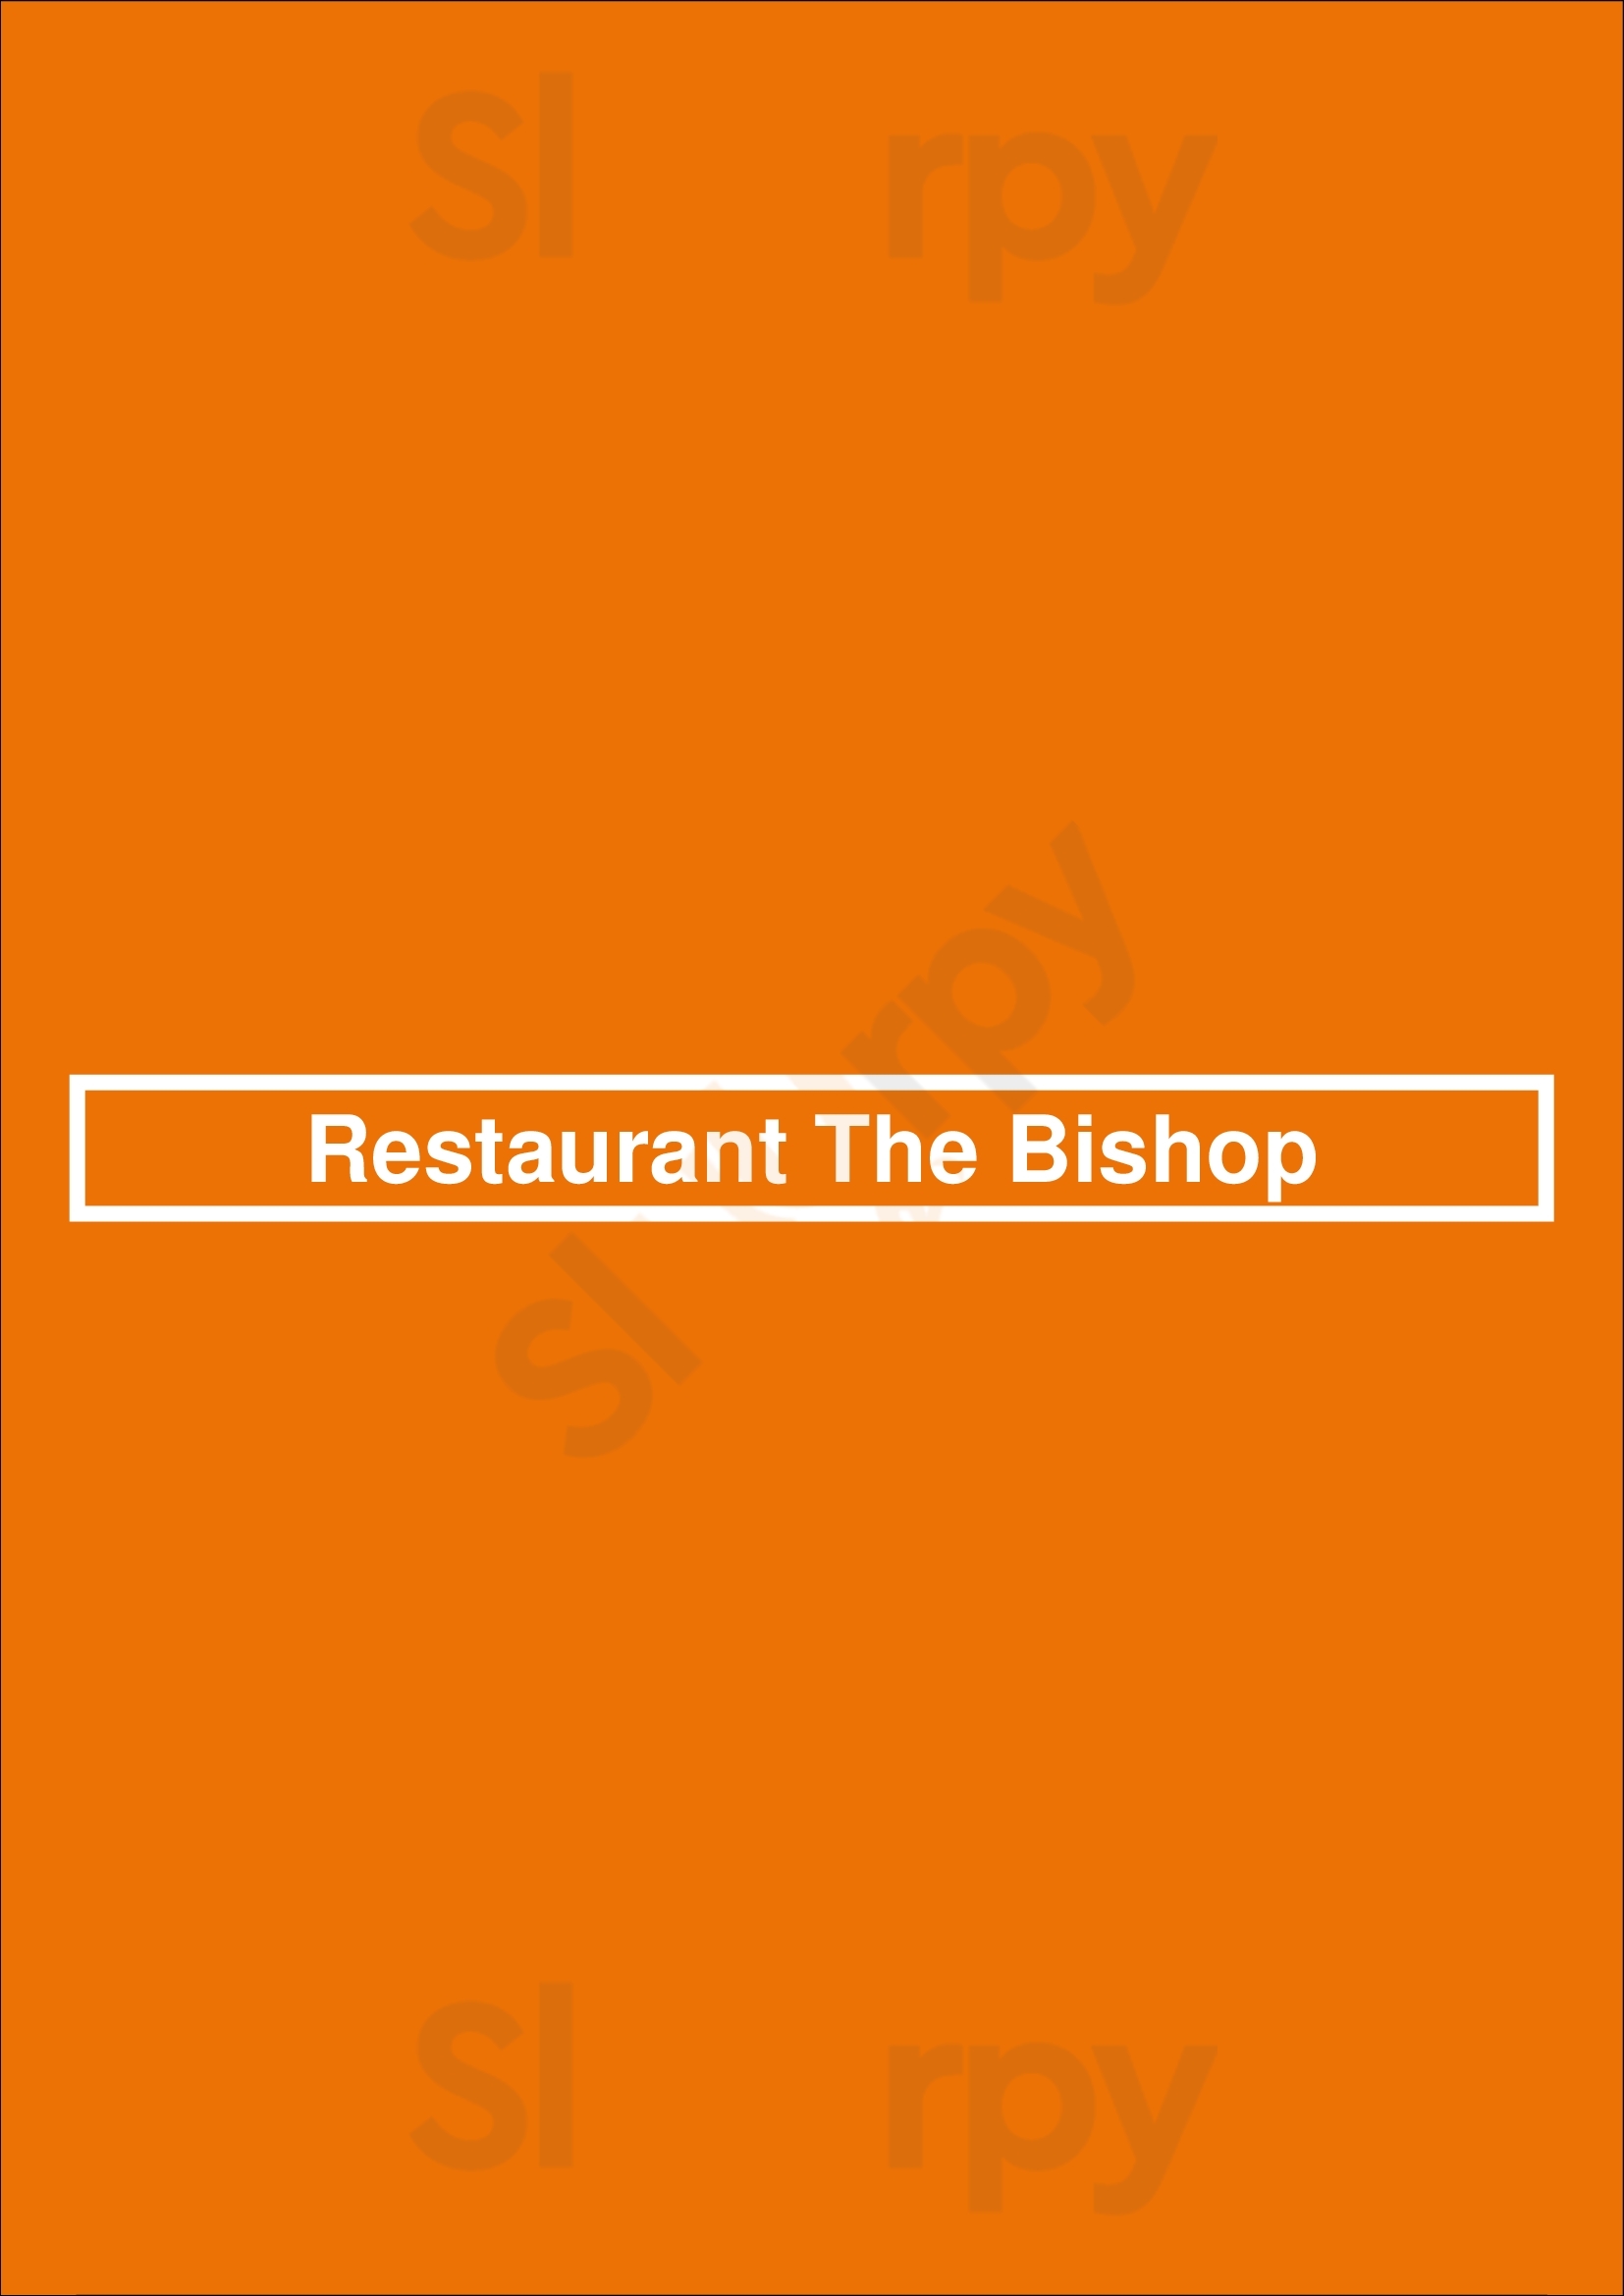 Restaurant The Bishop Leiden Menu - 1